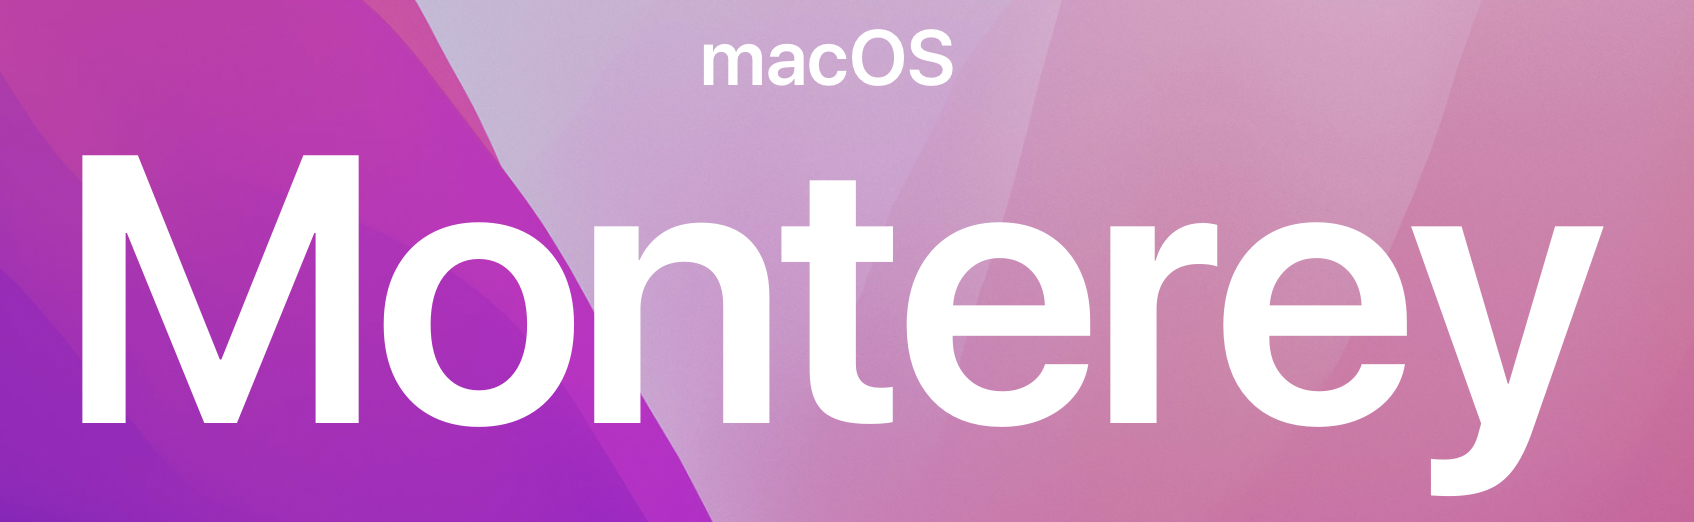 Kasperskyは「macOS Monterey対応」